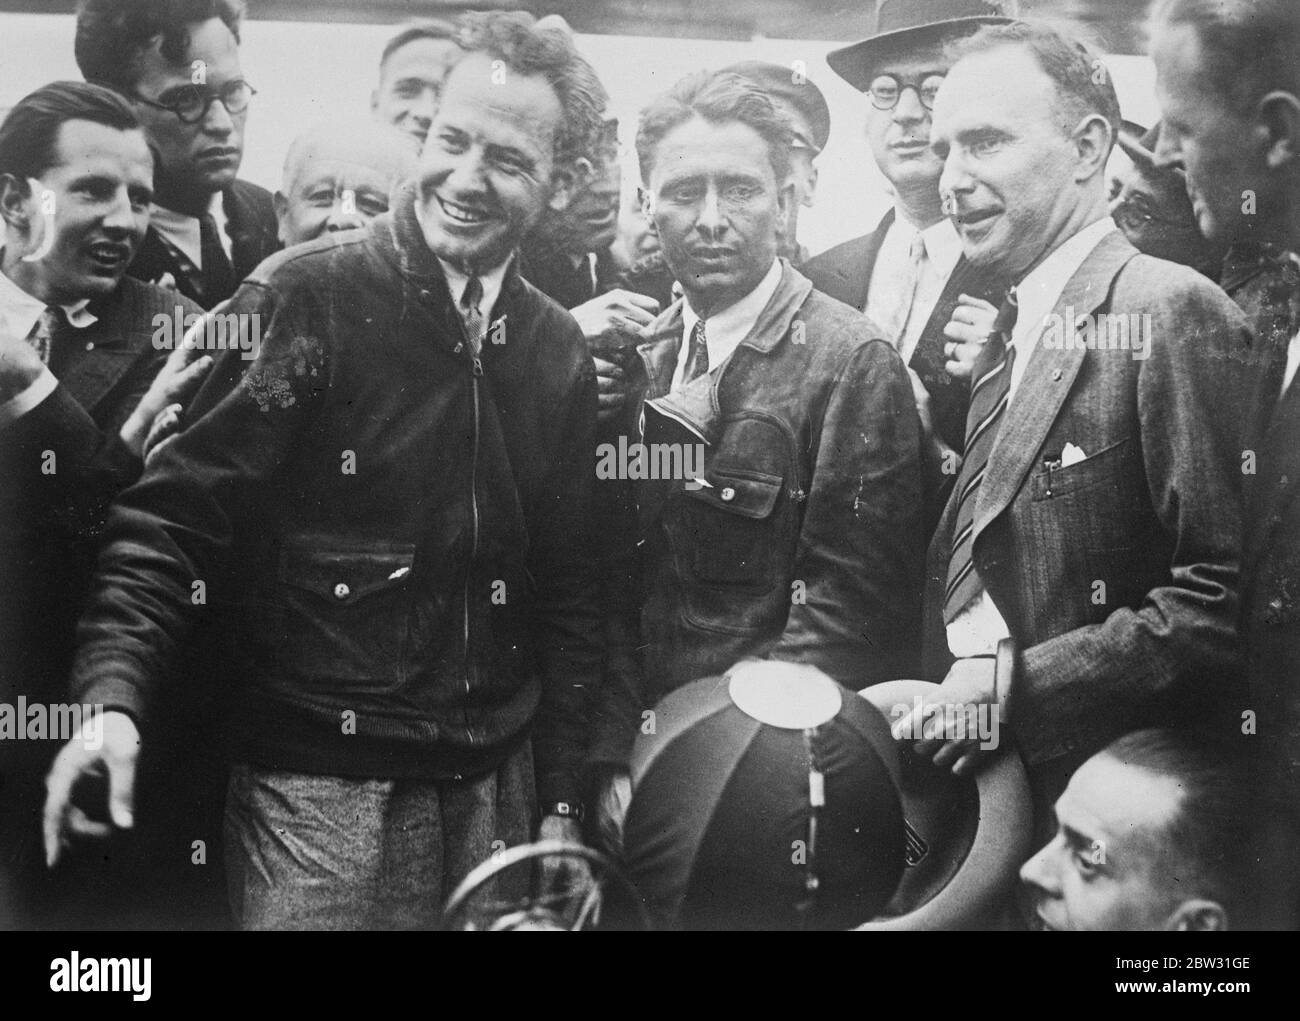 Autour du monde les flliers à Berlin . Capt Bennett Griffin et Lieut James Mattern , les pilotes américains qui tentent un vol record dans le monde à leur arrivée à Berlin depuis Terre-Neuve . 7 juillet 1932 Banque D'Images